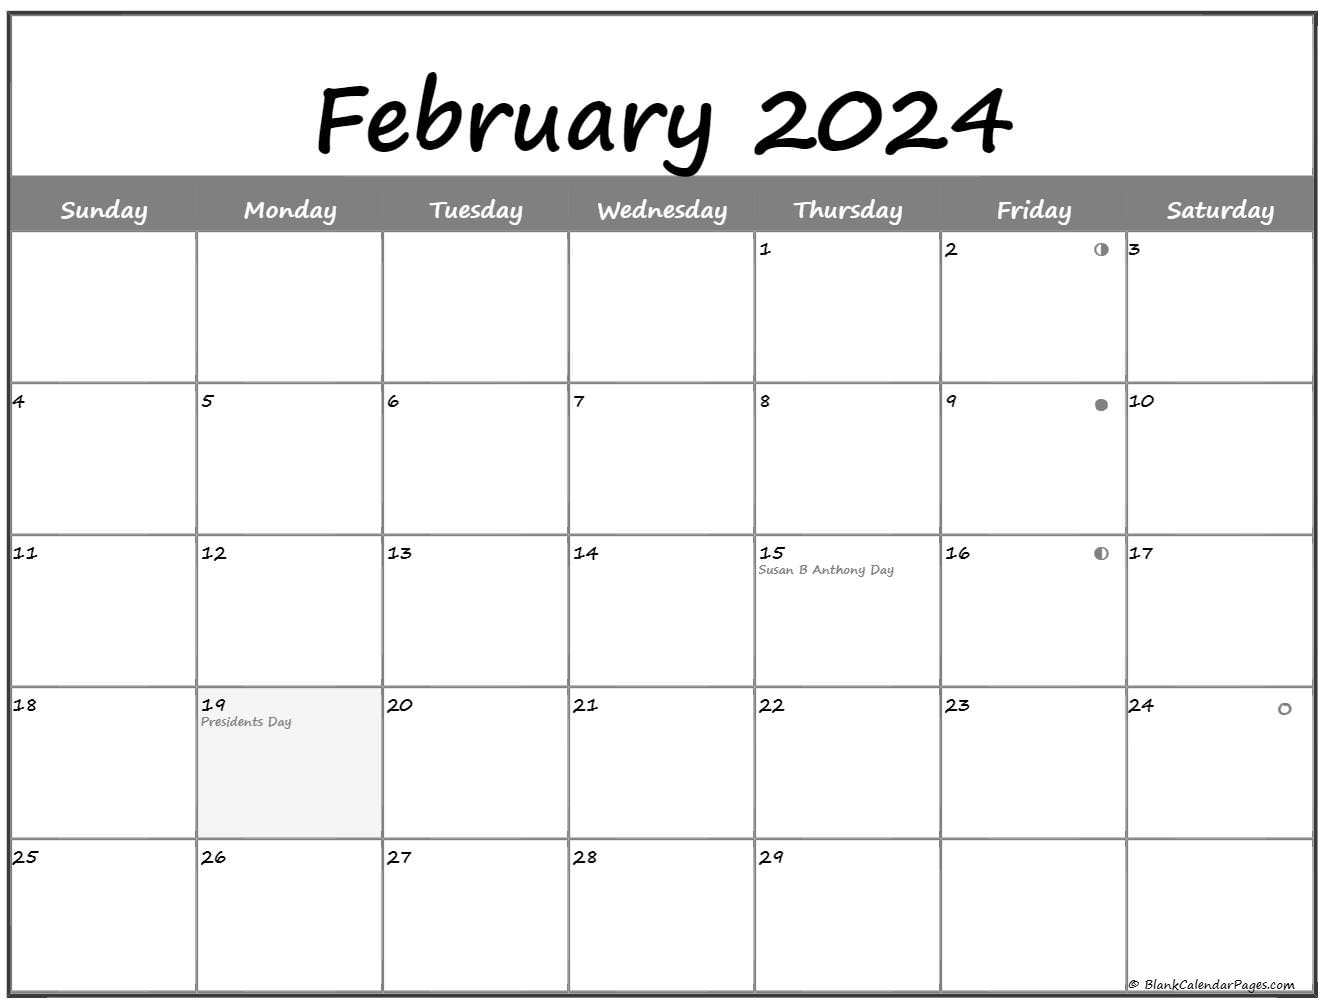 February Moon Calendar 2022 February 2022 Lunar Calendar | Moon Phase Calendar